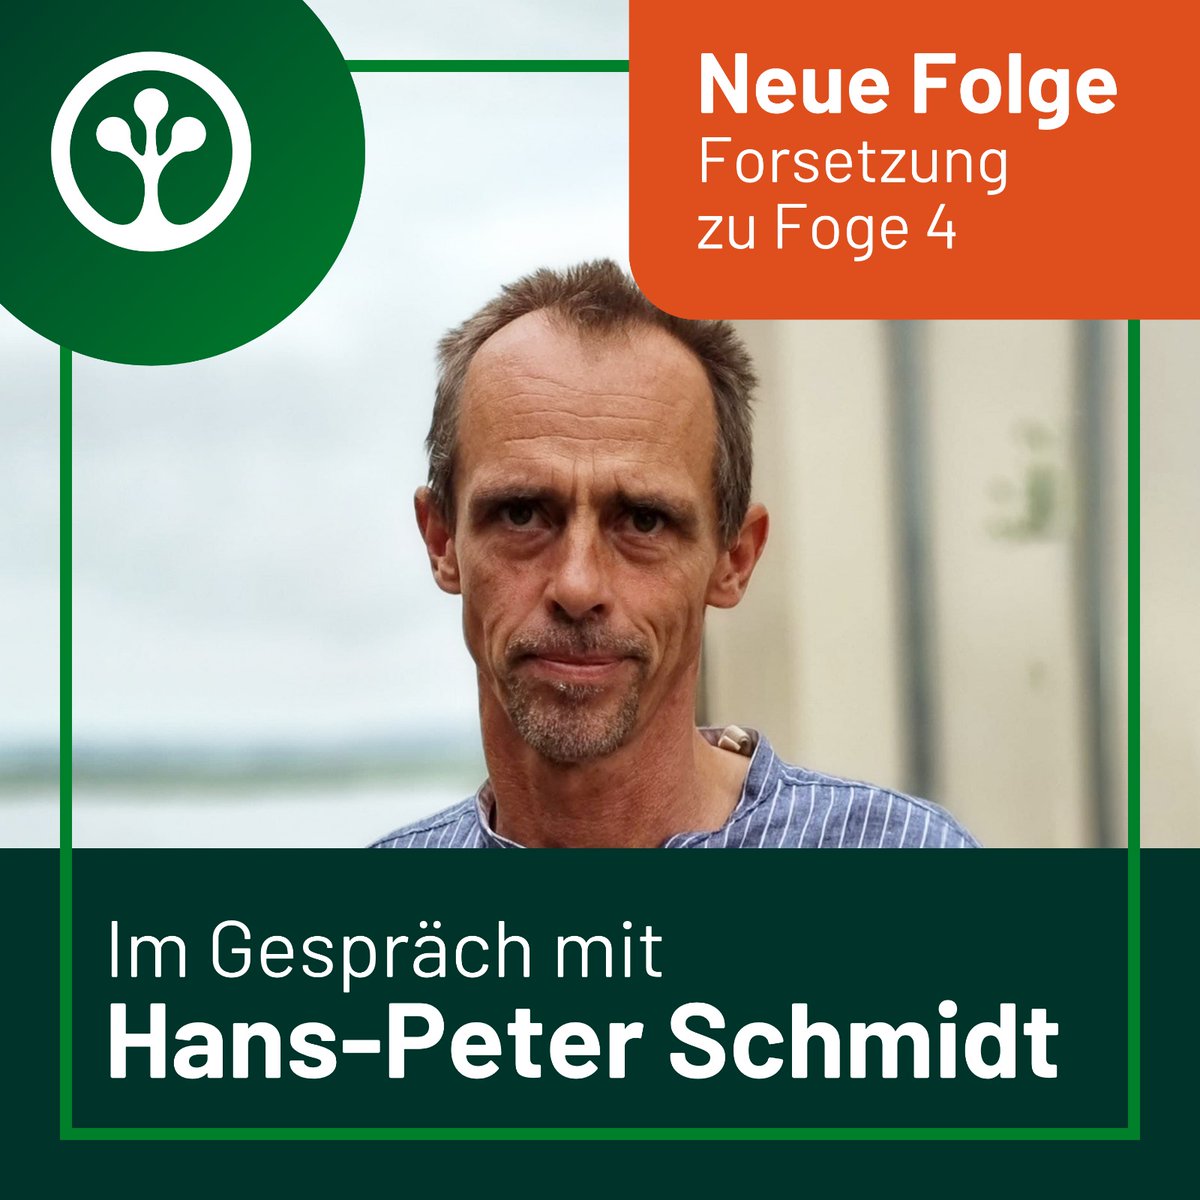 #NeueFolge Zum zweiten Mal ist Hans-Peter Schmidt bei uns zu Gast; diesmal gibt er Euch einen tieferen Einblick in die Welt der #Pflanzenkohle
🎧 Freut Euch darauf, Neues zu lernen und hört unseren #Podcast auf Eurer Lieblings-Plattform: linktr.ee/treeo.one 

#Biochar